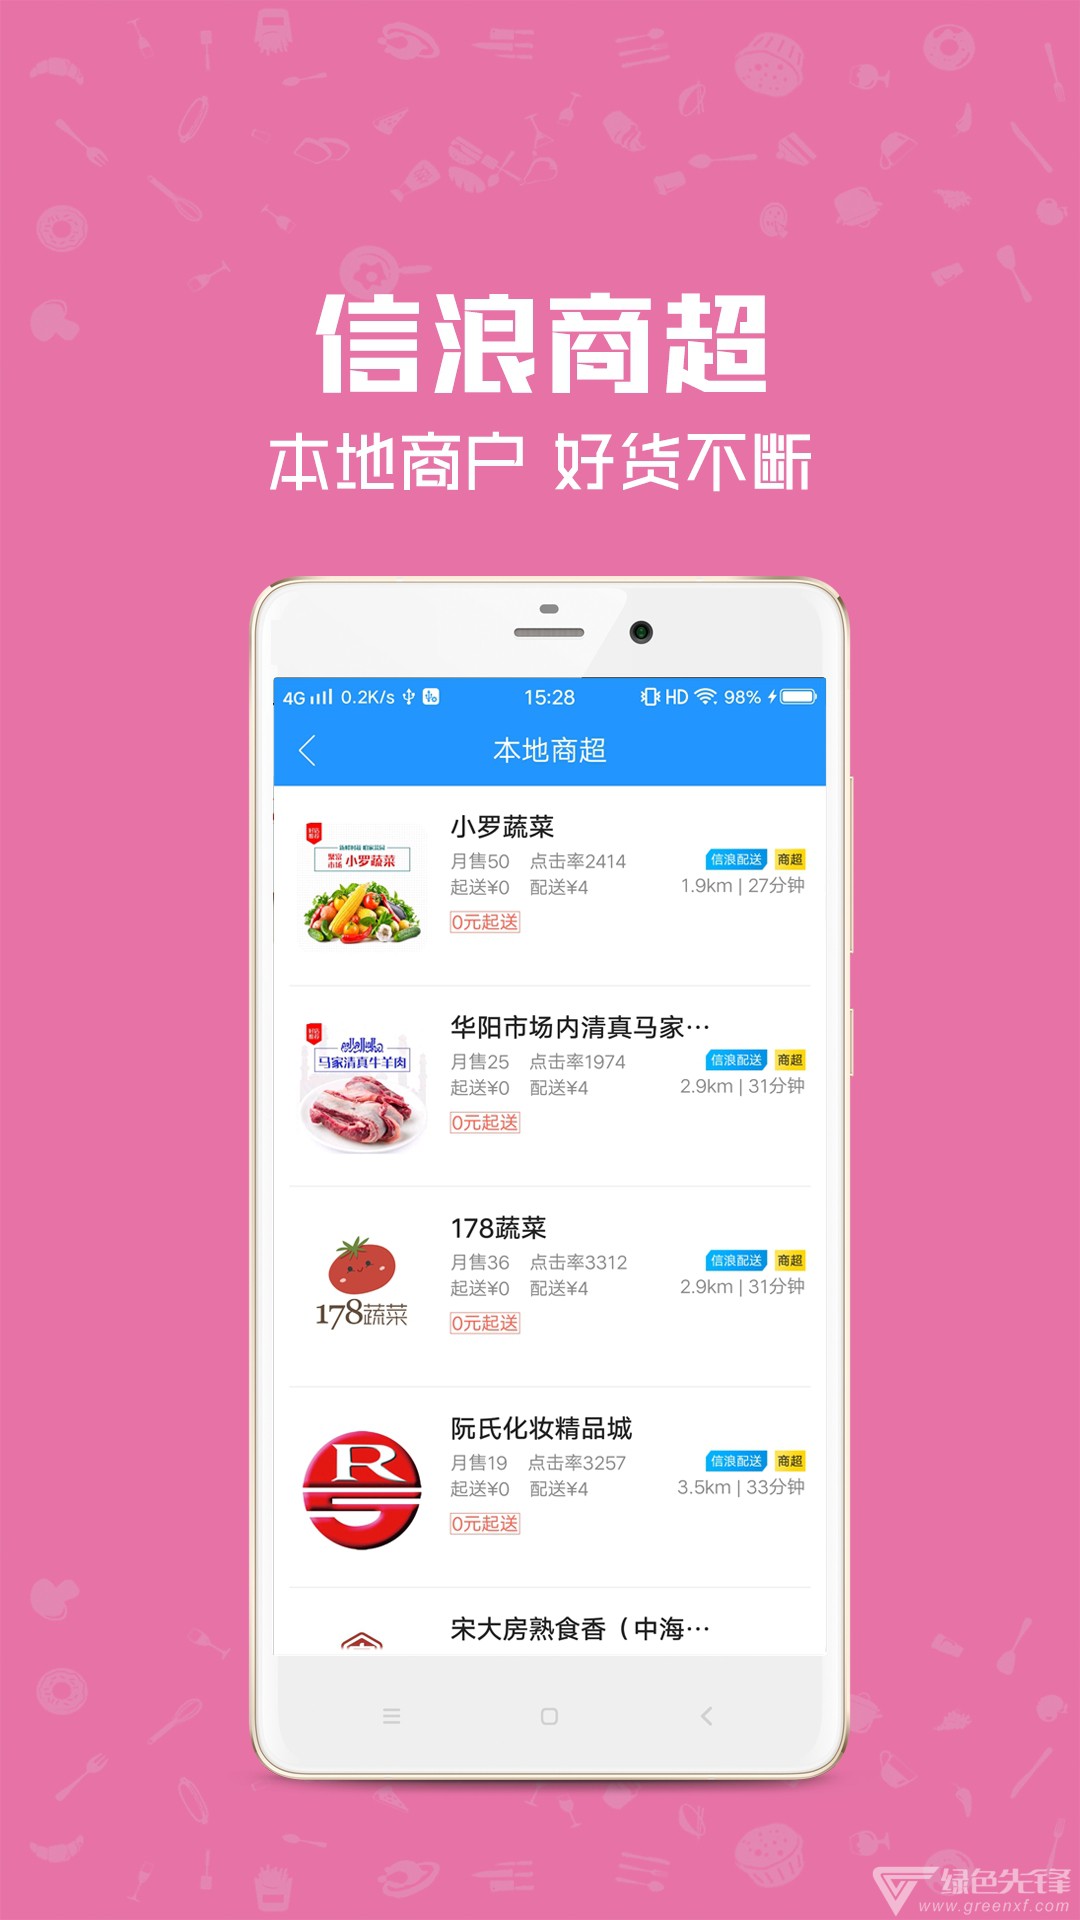 Android点单软件：改变餐饮体验，提升用餐便利性与效率  第8张